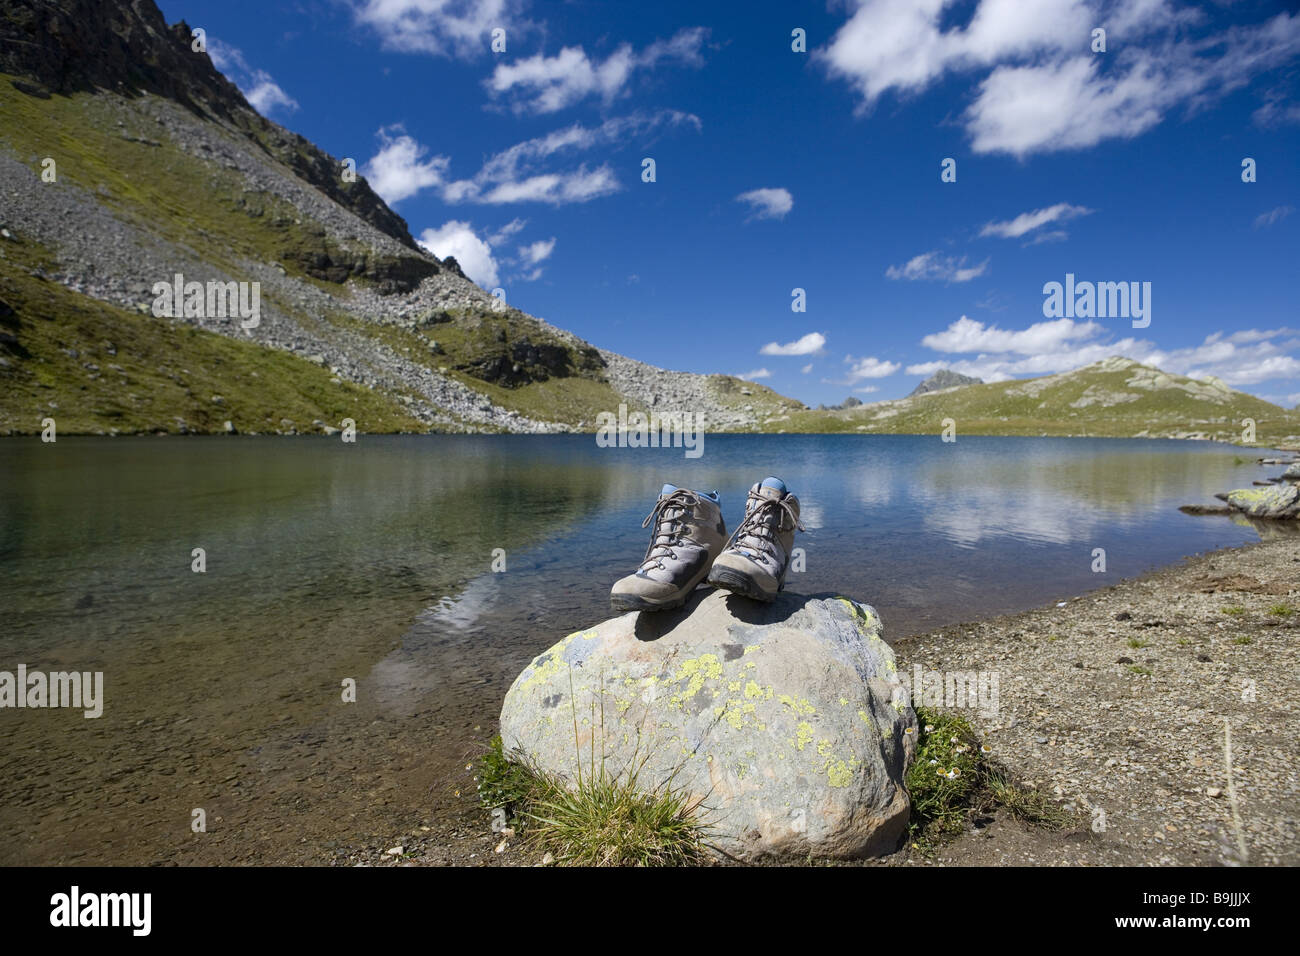 Österreich-Tirol-Vorarlberg-Silvretta-Bieltal Rad-See Ufer Stone Mountain- Schuhe legte Alpen Alpensee ruhenden Timeout Stockfotografie - Alamy